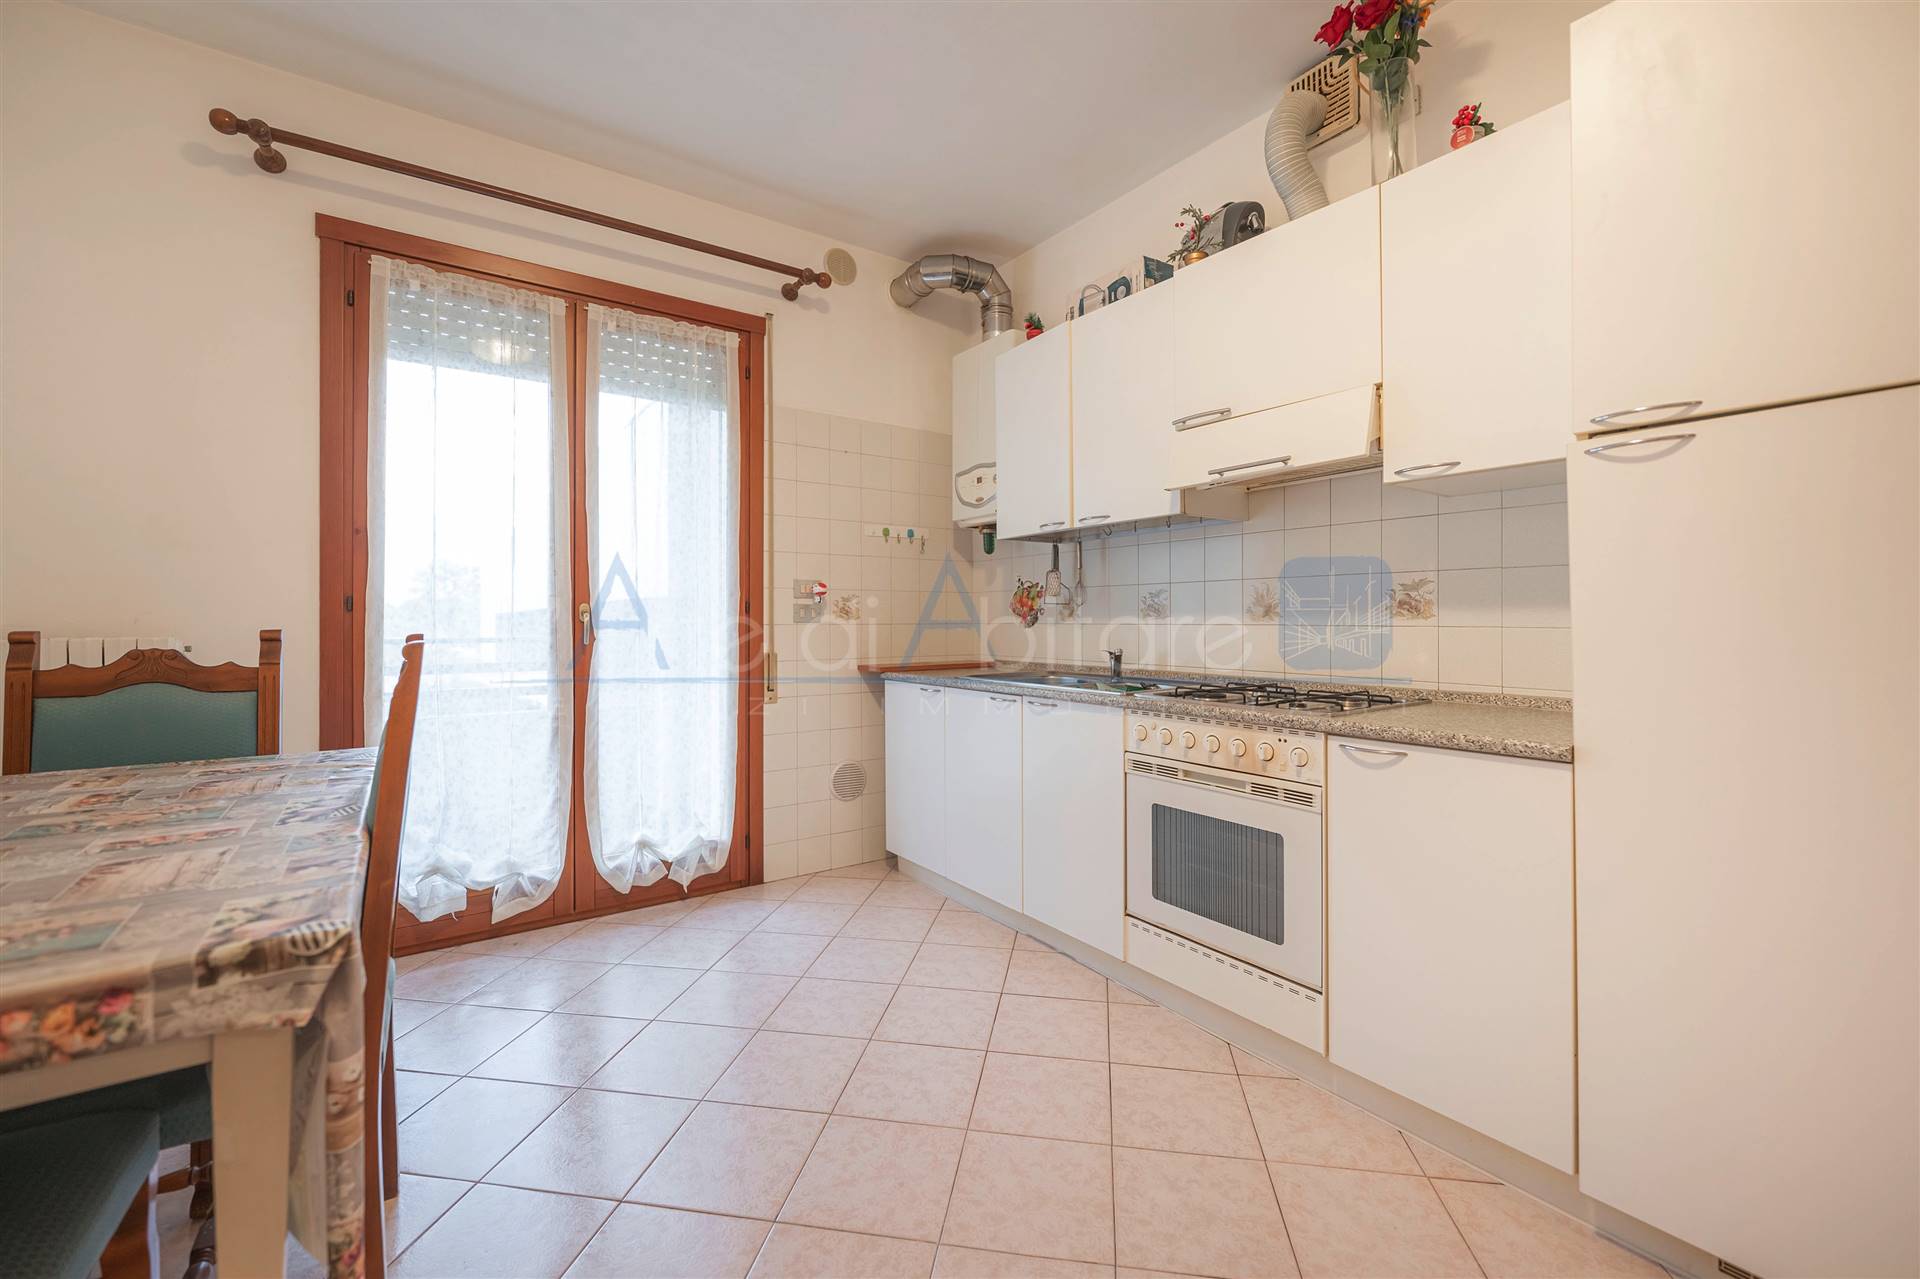 Appartamento in vendita a Quarto d'Altino, 3 locali, prezzo € 83.000 | PortaleAgenzieImmobiliari.it